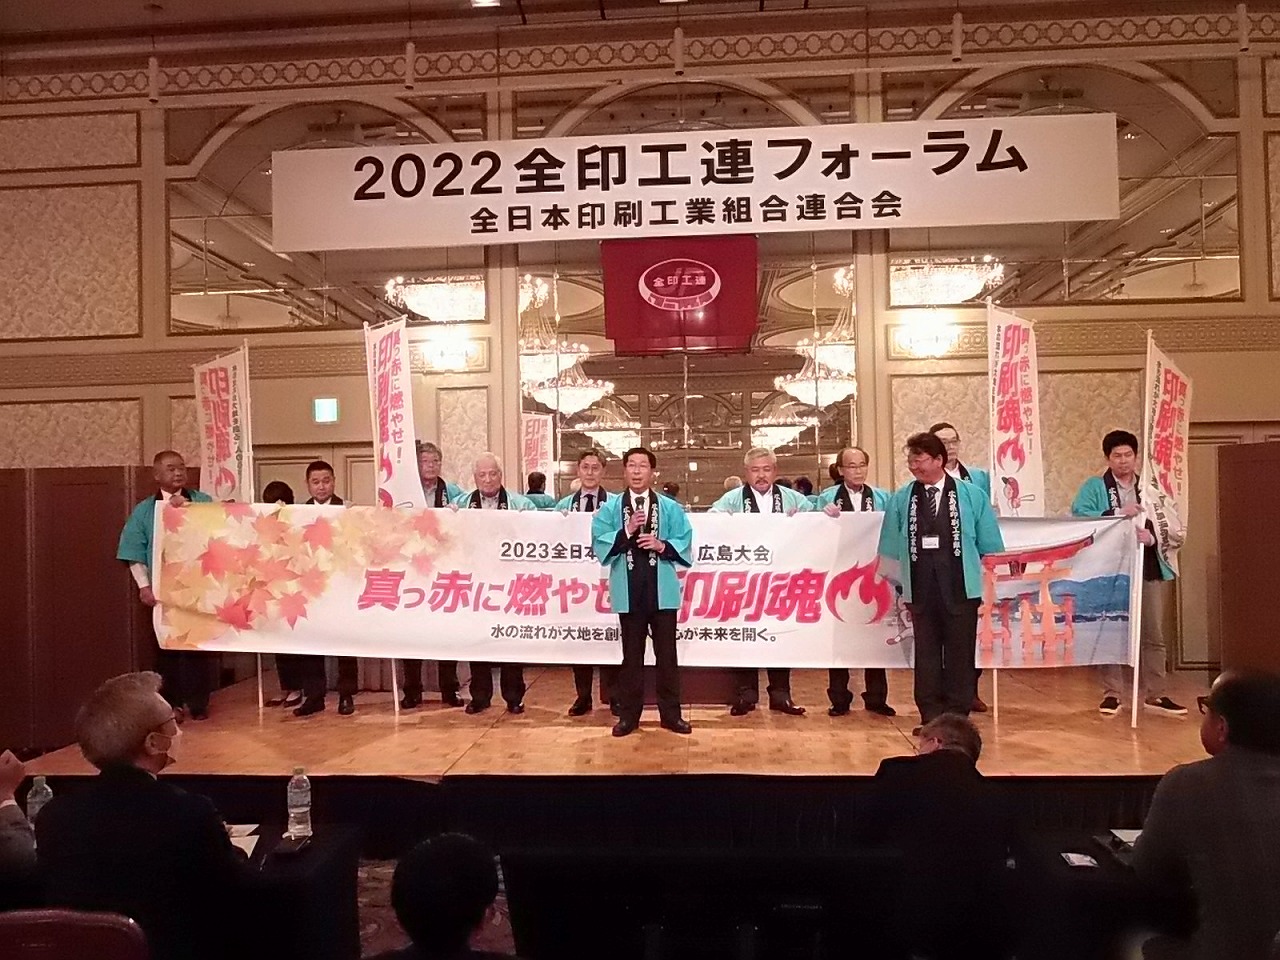 2022全印工連フォーラム・「2023全日本印刷文化典広島大会」開催を発表 | 印刷タイムス | 印刷・DTP・デザイン・マルチメディアを繋ぐ